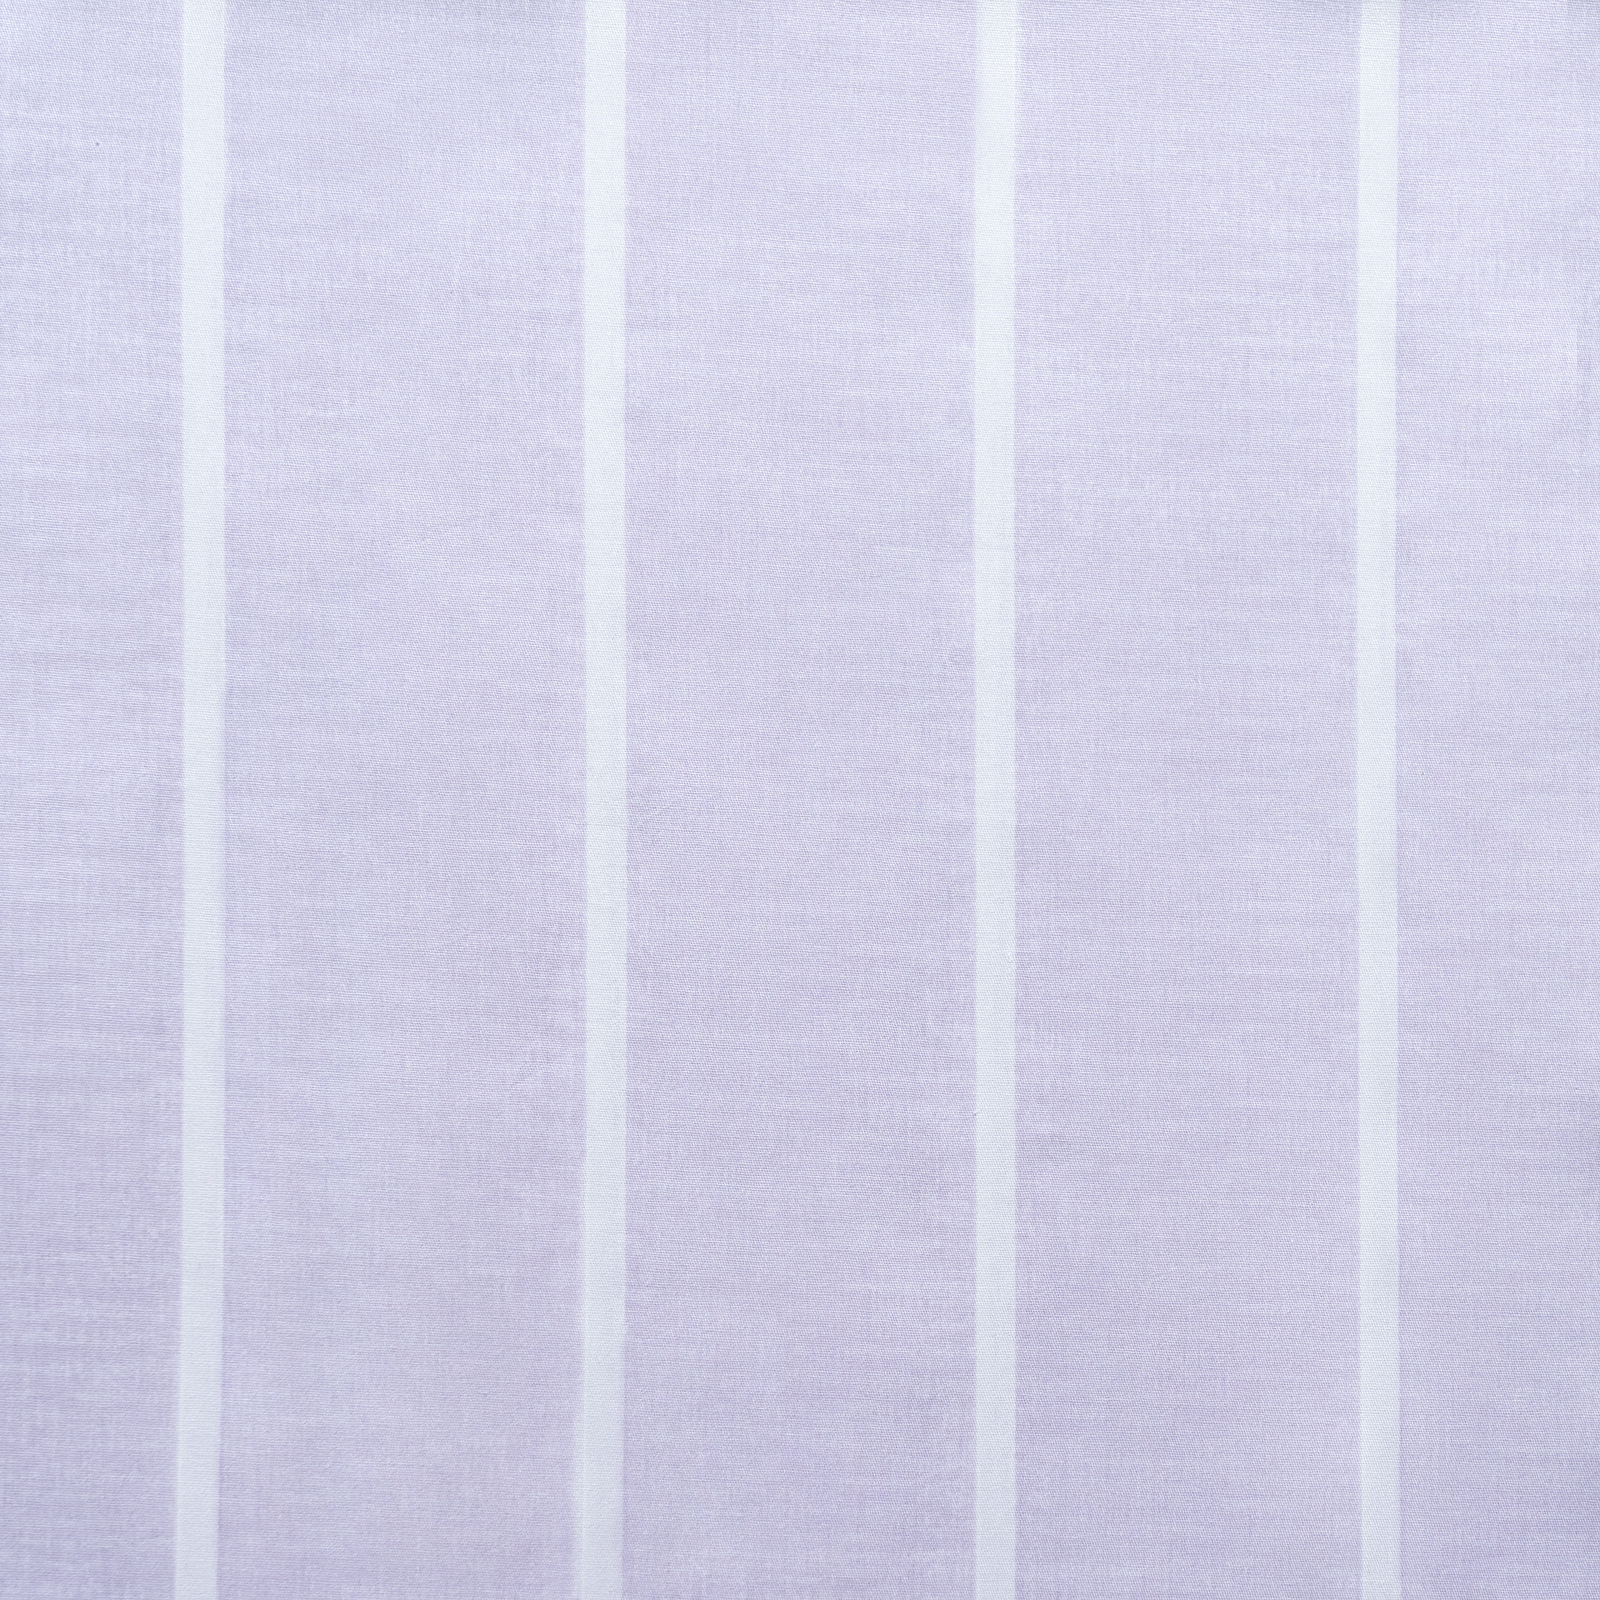 Простыня на резинке Medsleep Дюрен серая 160х200+25 см, цвет серый - фото 2